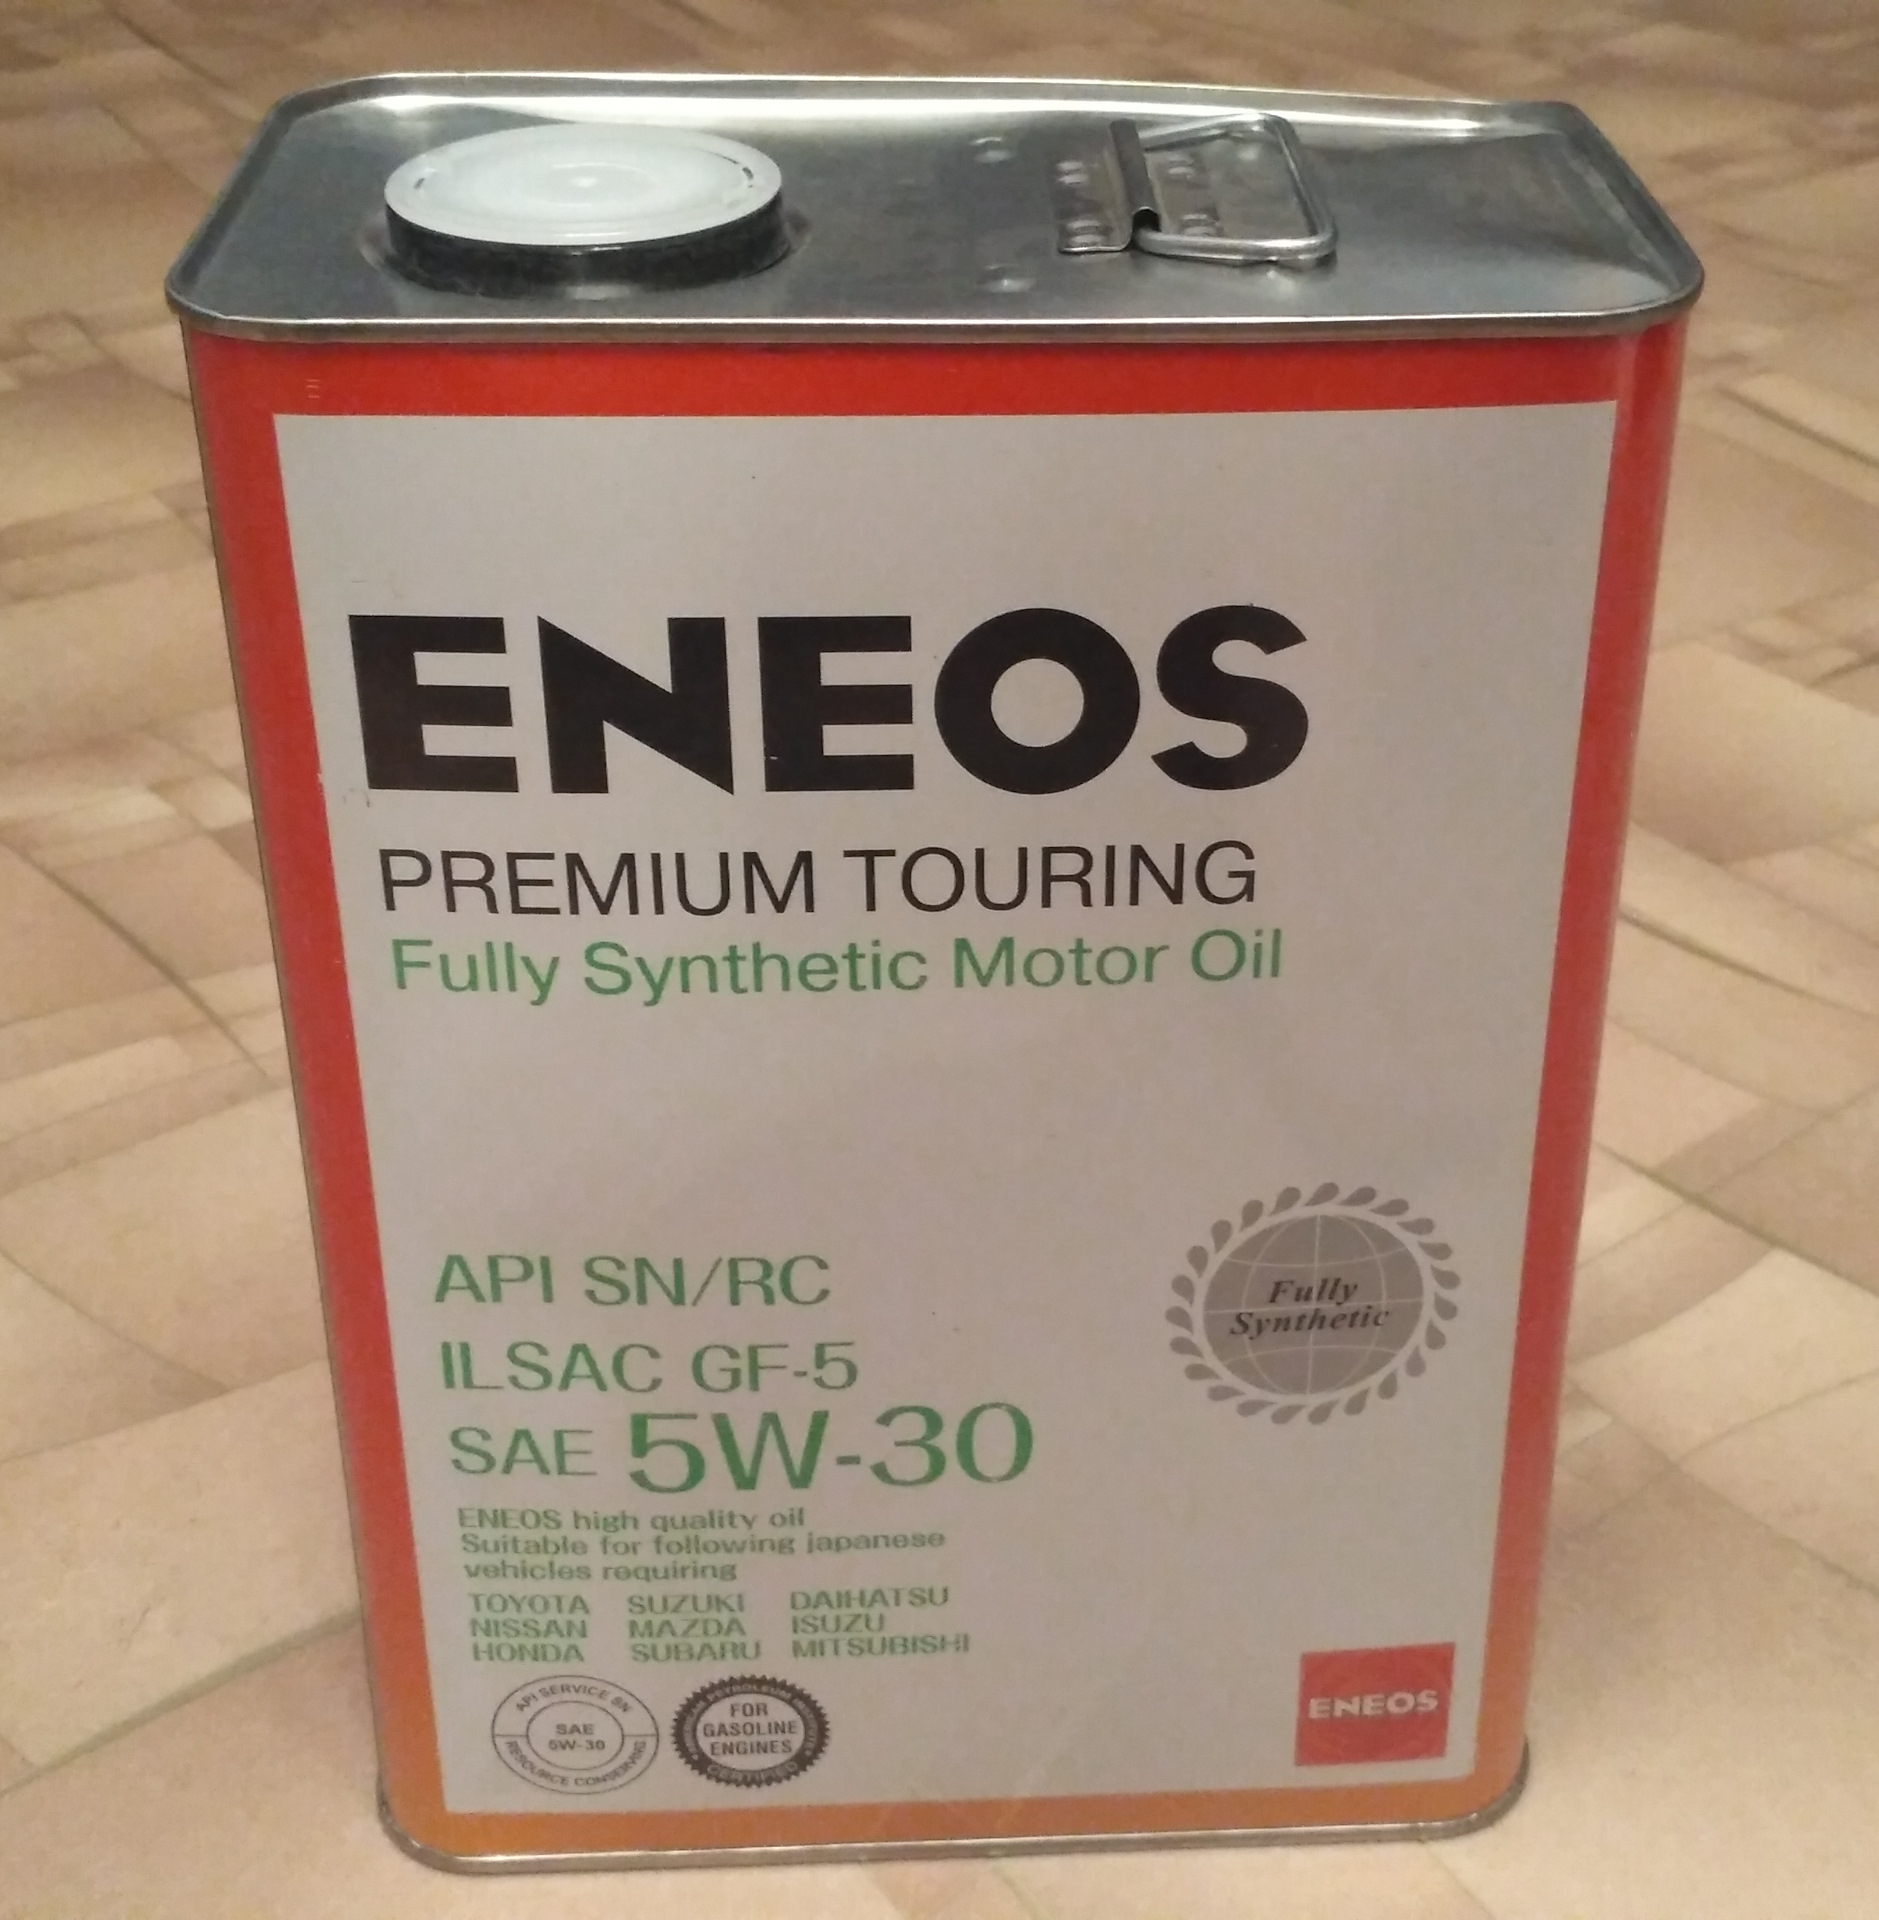 Масло eneos premium touring. ENEOS Premium Touring 5w-30. ENEOS 5w30 Premium Touring fully. ENEOS Premium Touring fully Synthetic 5w-30. Масло ENEOS 5w30 премиум туринг.